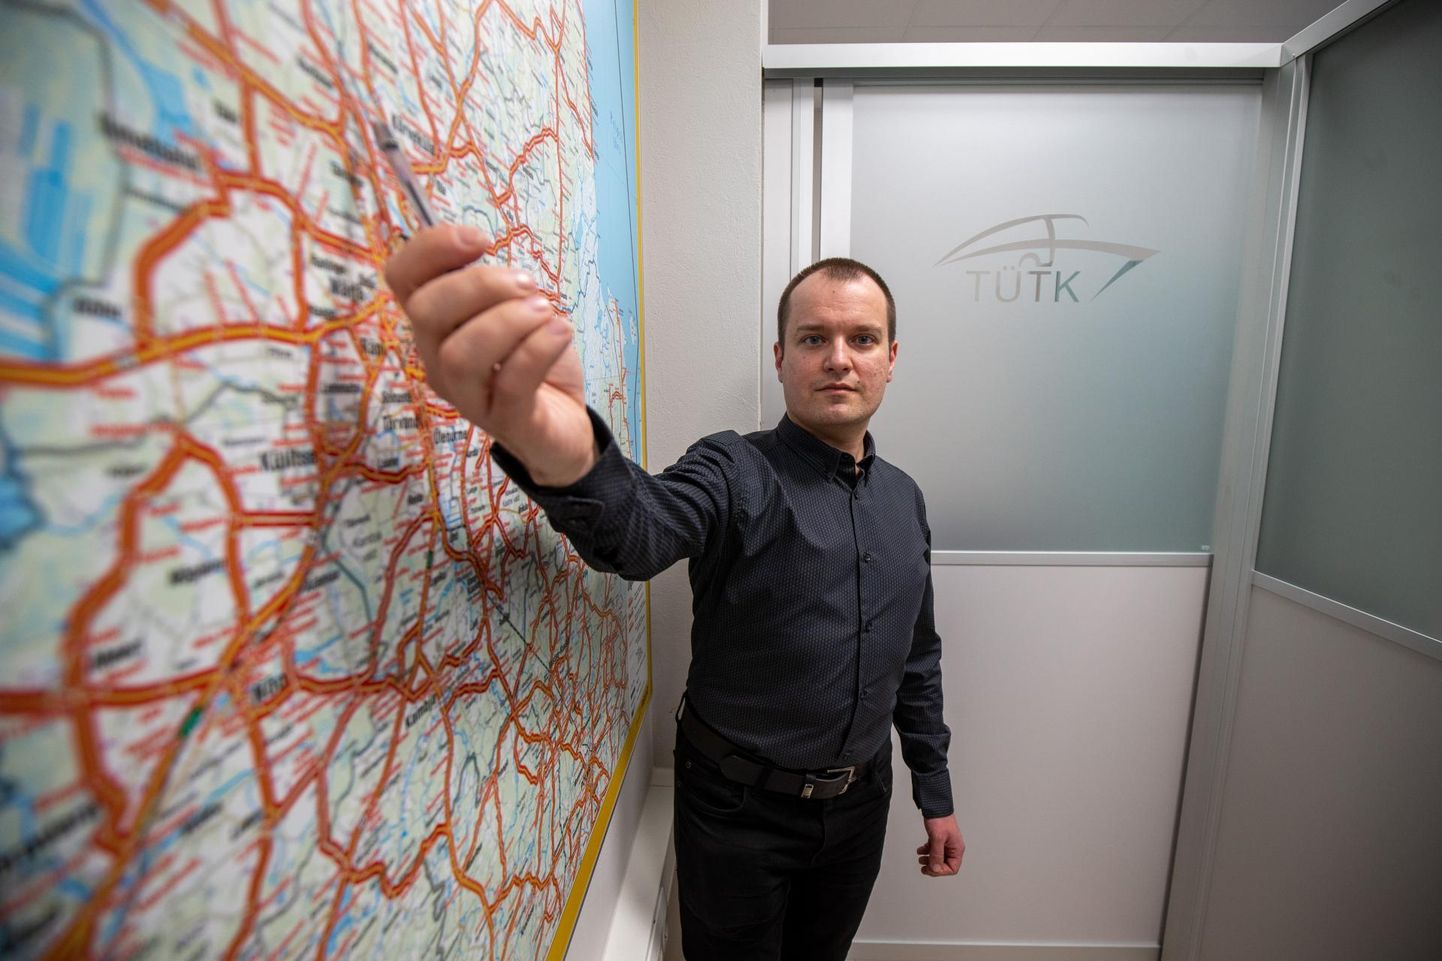 Tartumaa ühistranspordikeskuse juhataja Maikl Aunapuu sõnas, et maakonna bussiliinivõrgu korrastamine käib pidevalt.